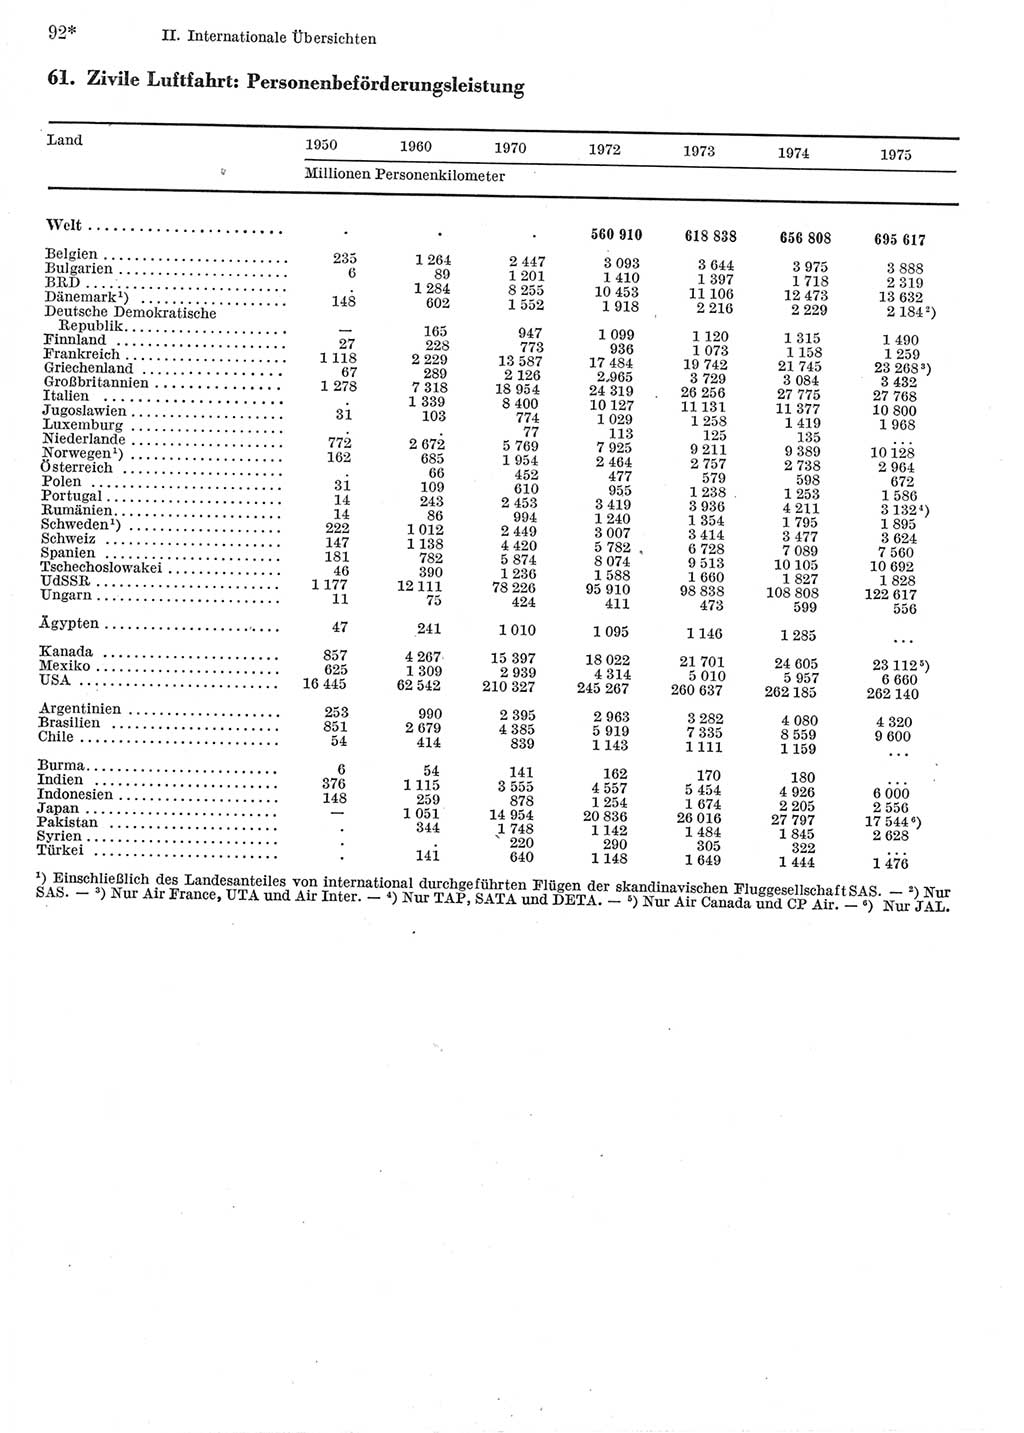 Statistisches Jahrbuch der Deutschen Demokratischen Republik (DDR) 1977, Seite 92 (Stat. Jb. DDR 1977, S. 92)